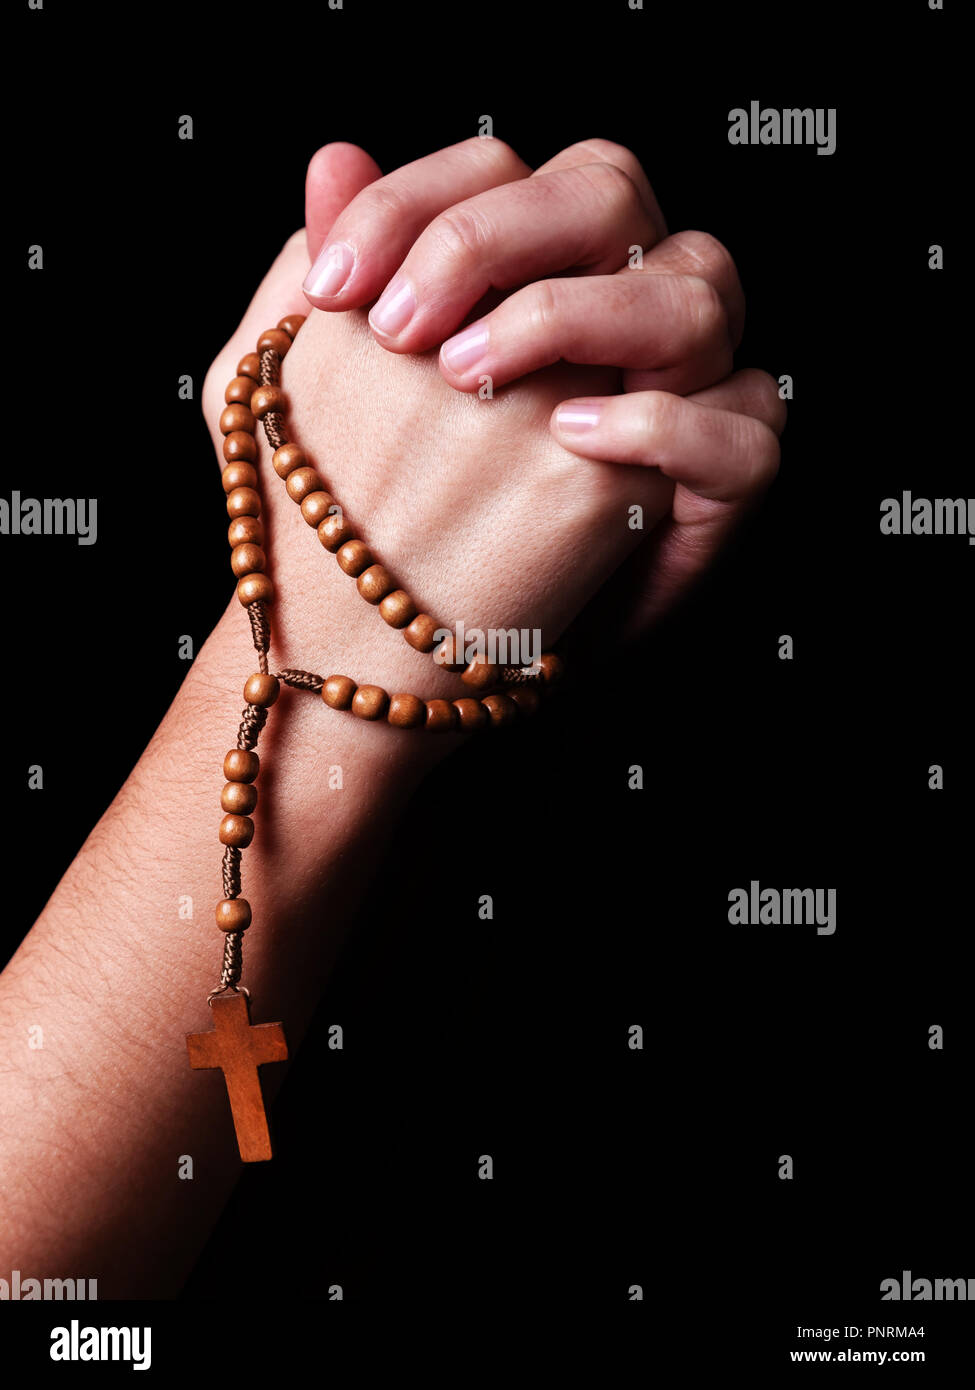 Weibliche Hände betend mit Perlen Rosenkranz mit einem Kreuz oder Kruzifix auf schwarzem Hintergrund. Frau mit Christlichen katholischen religiösen Glaubens. Profil oder Si Stockfoto